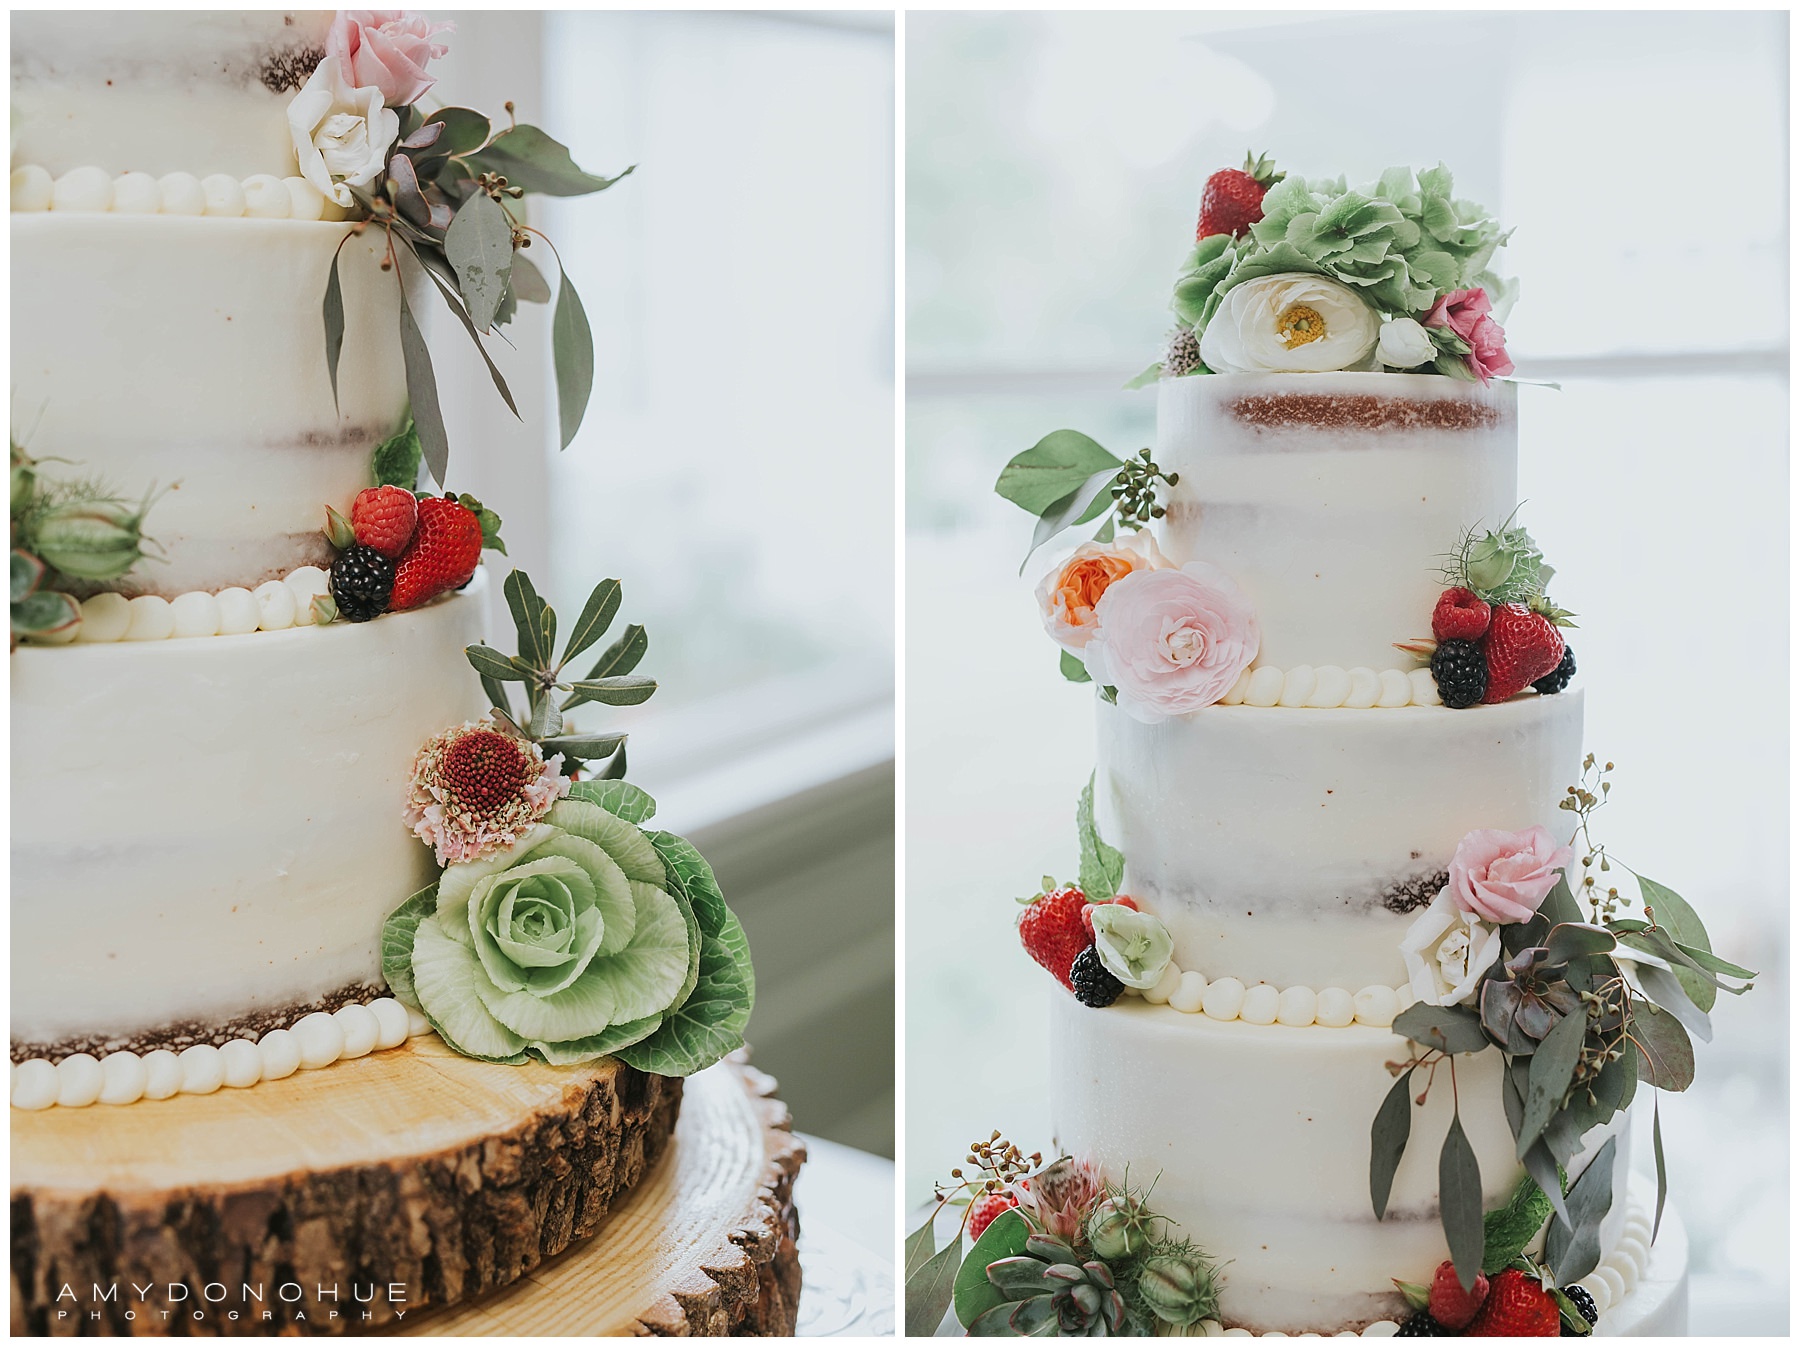 Wedding Cake | Basin Harbor Wedding Photographer | © Amy Donohue Photography